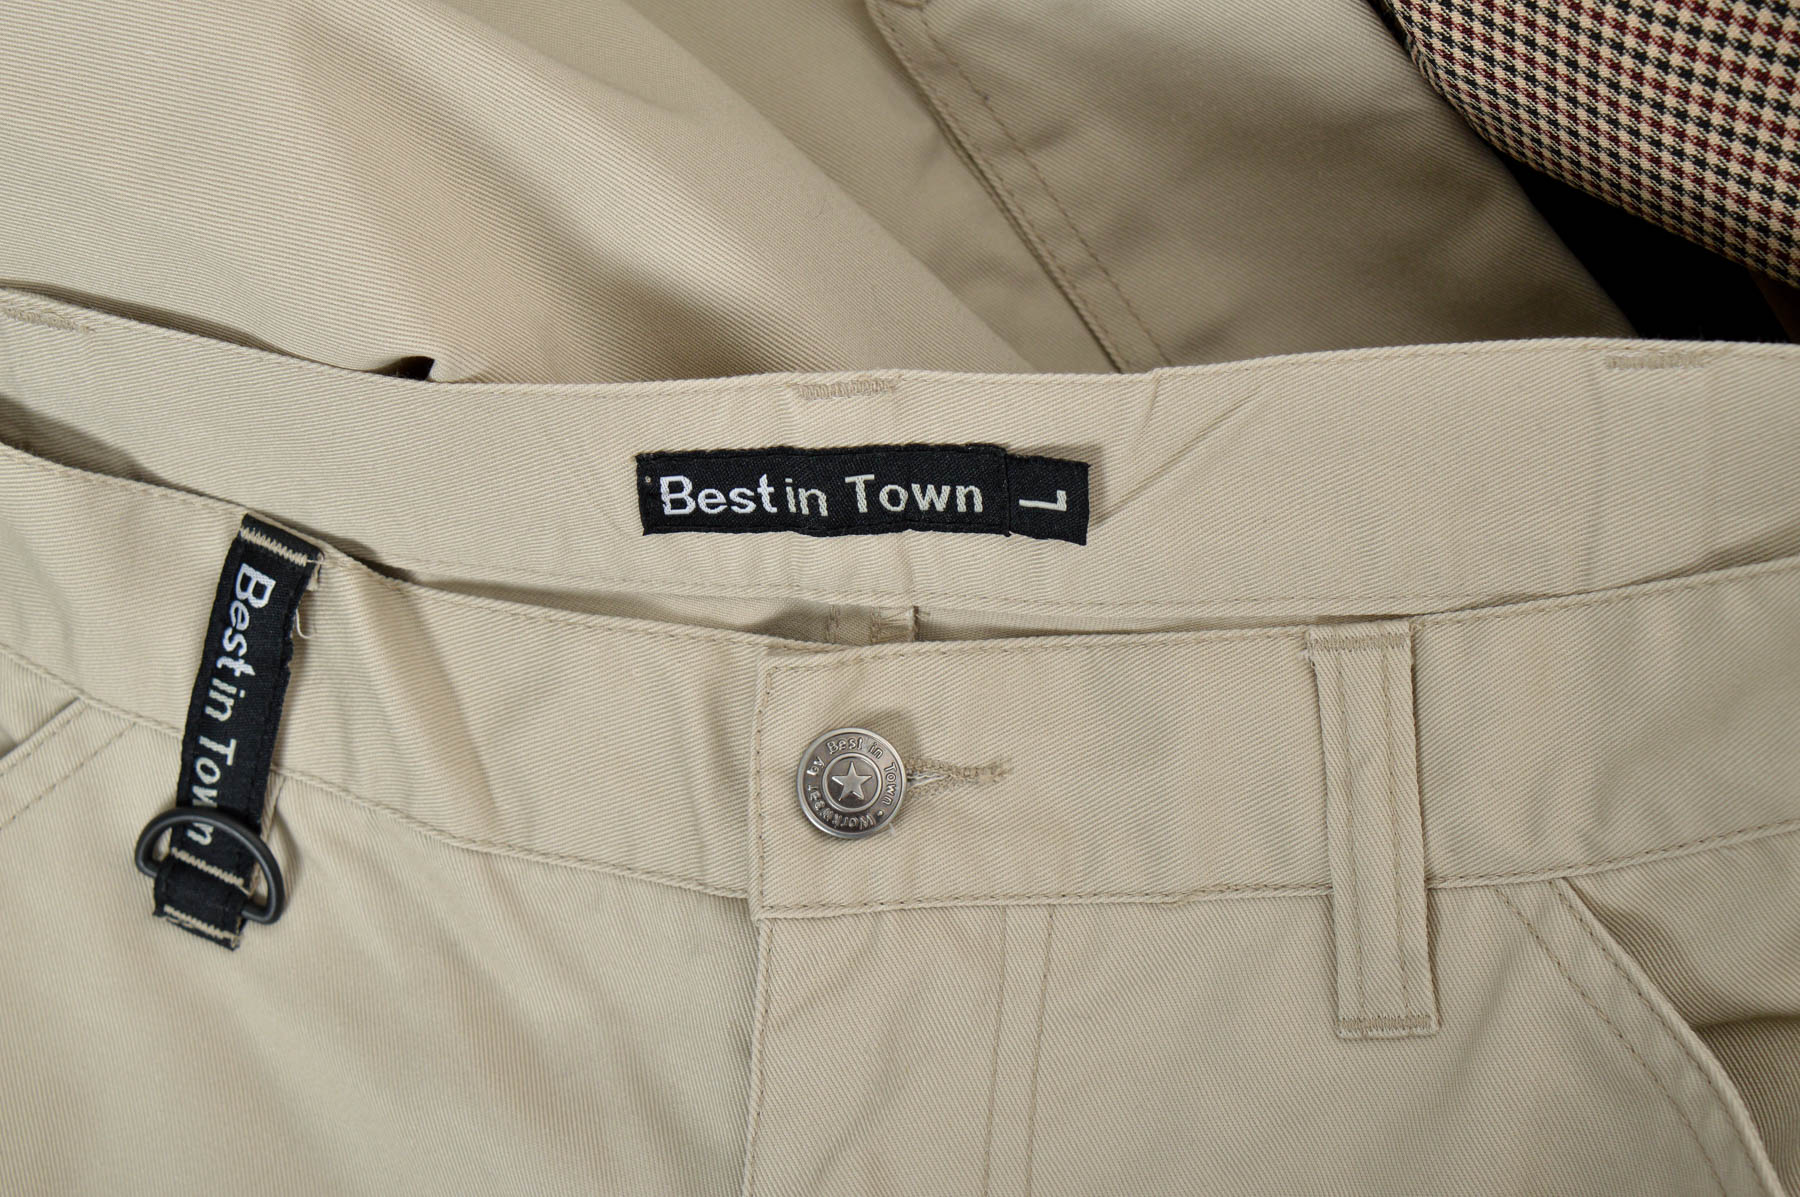 Men's trousers - Best in Town - 2